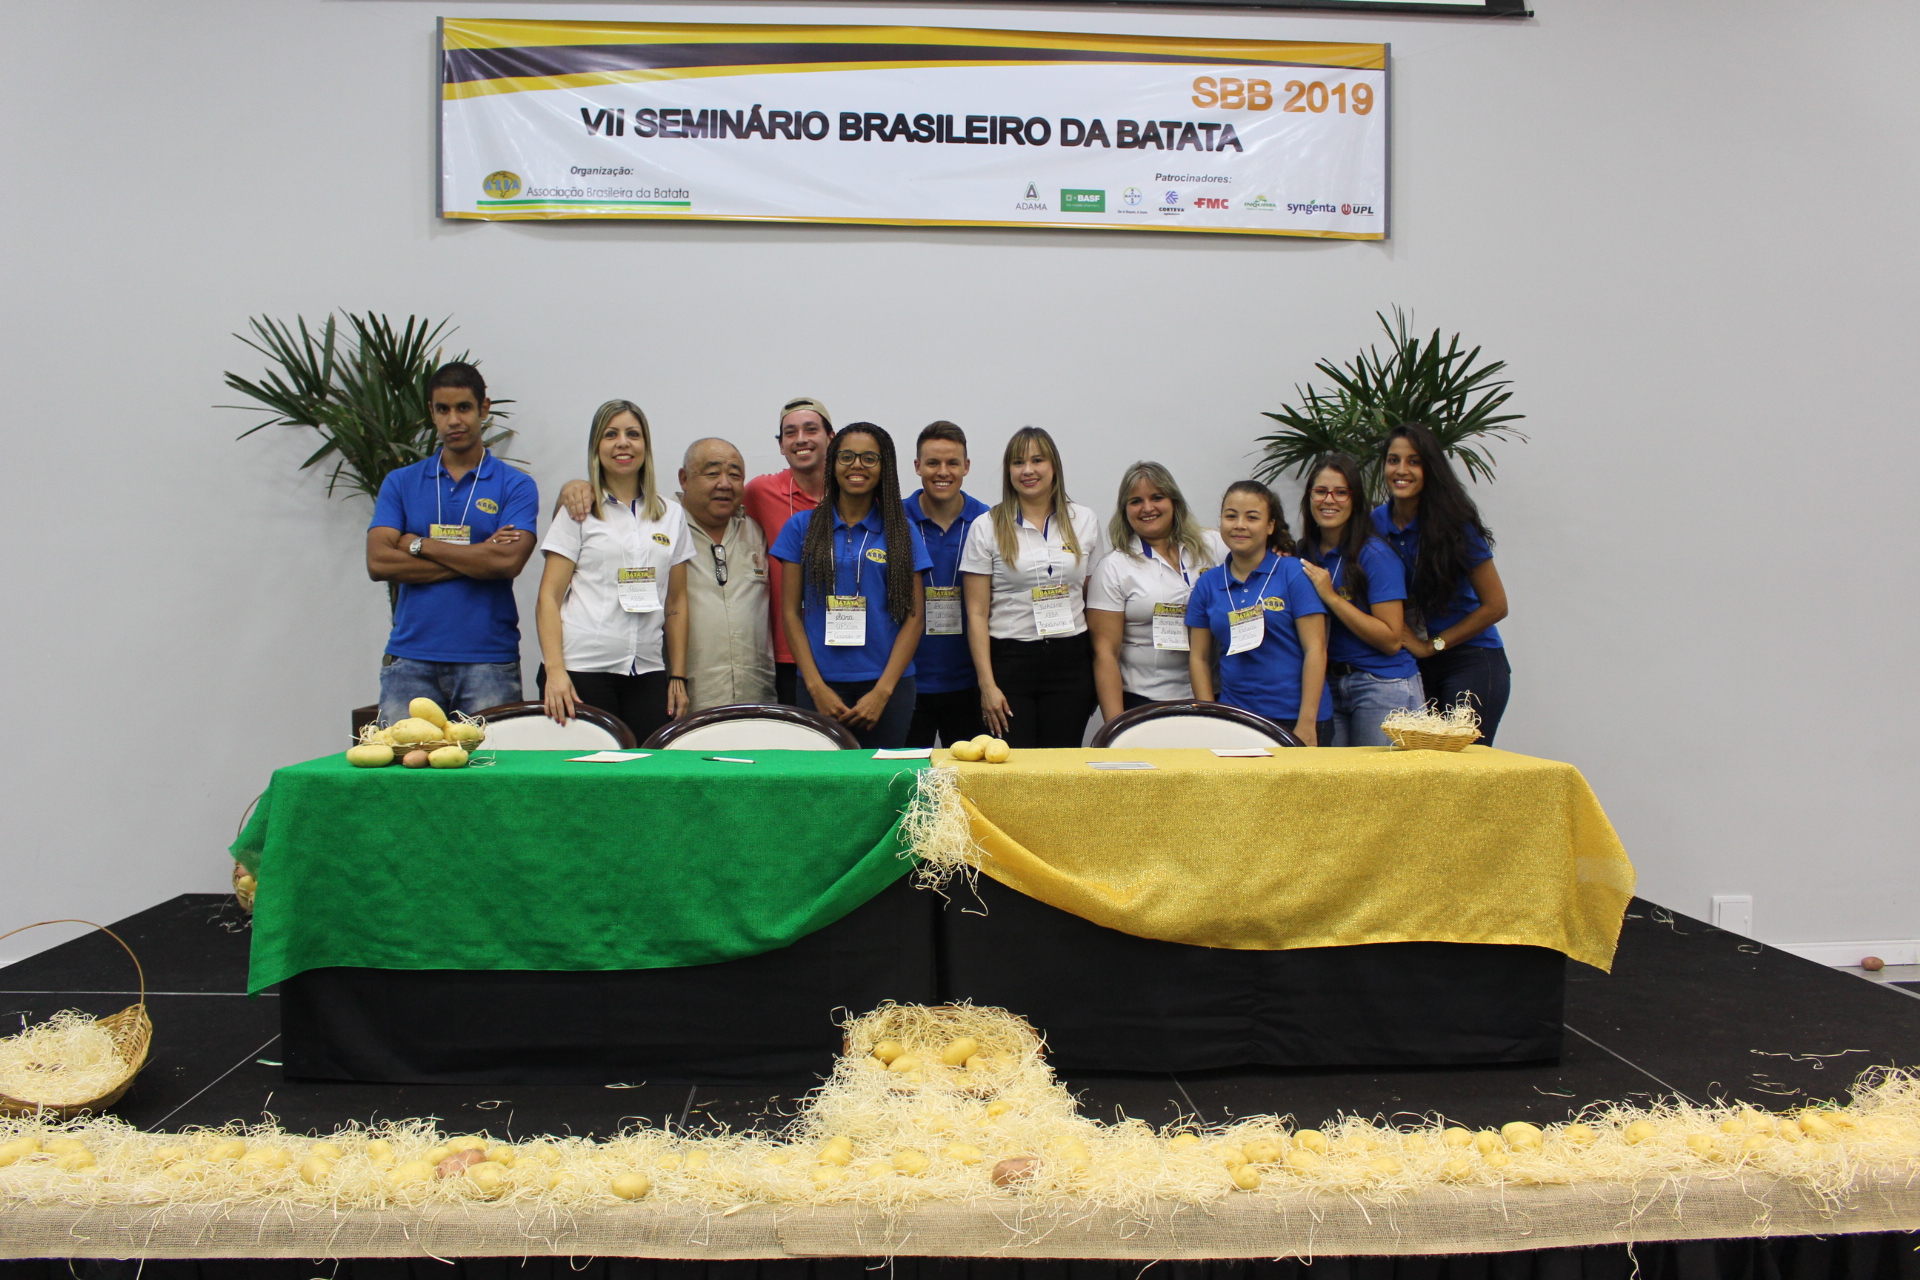 SBB 2019 – VII Seminário Brasileiro da Batata